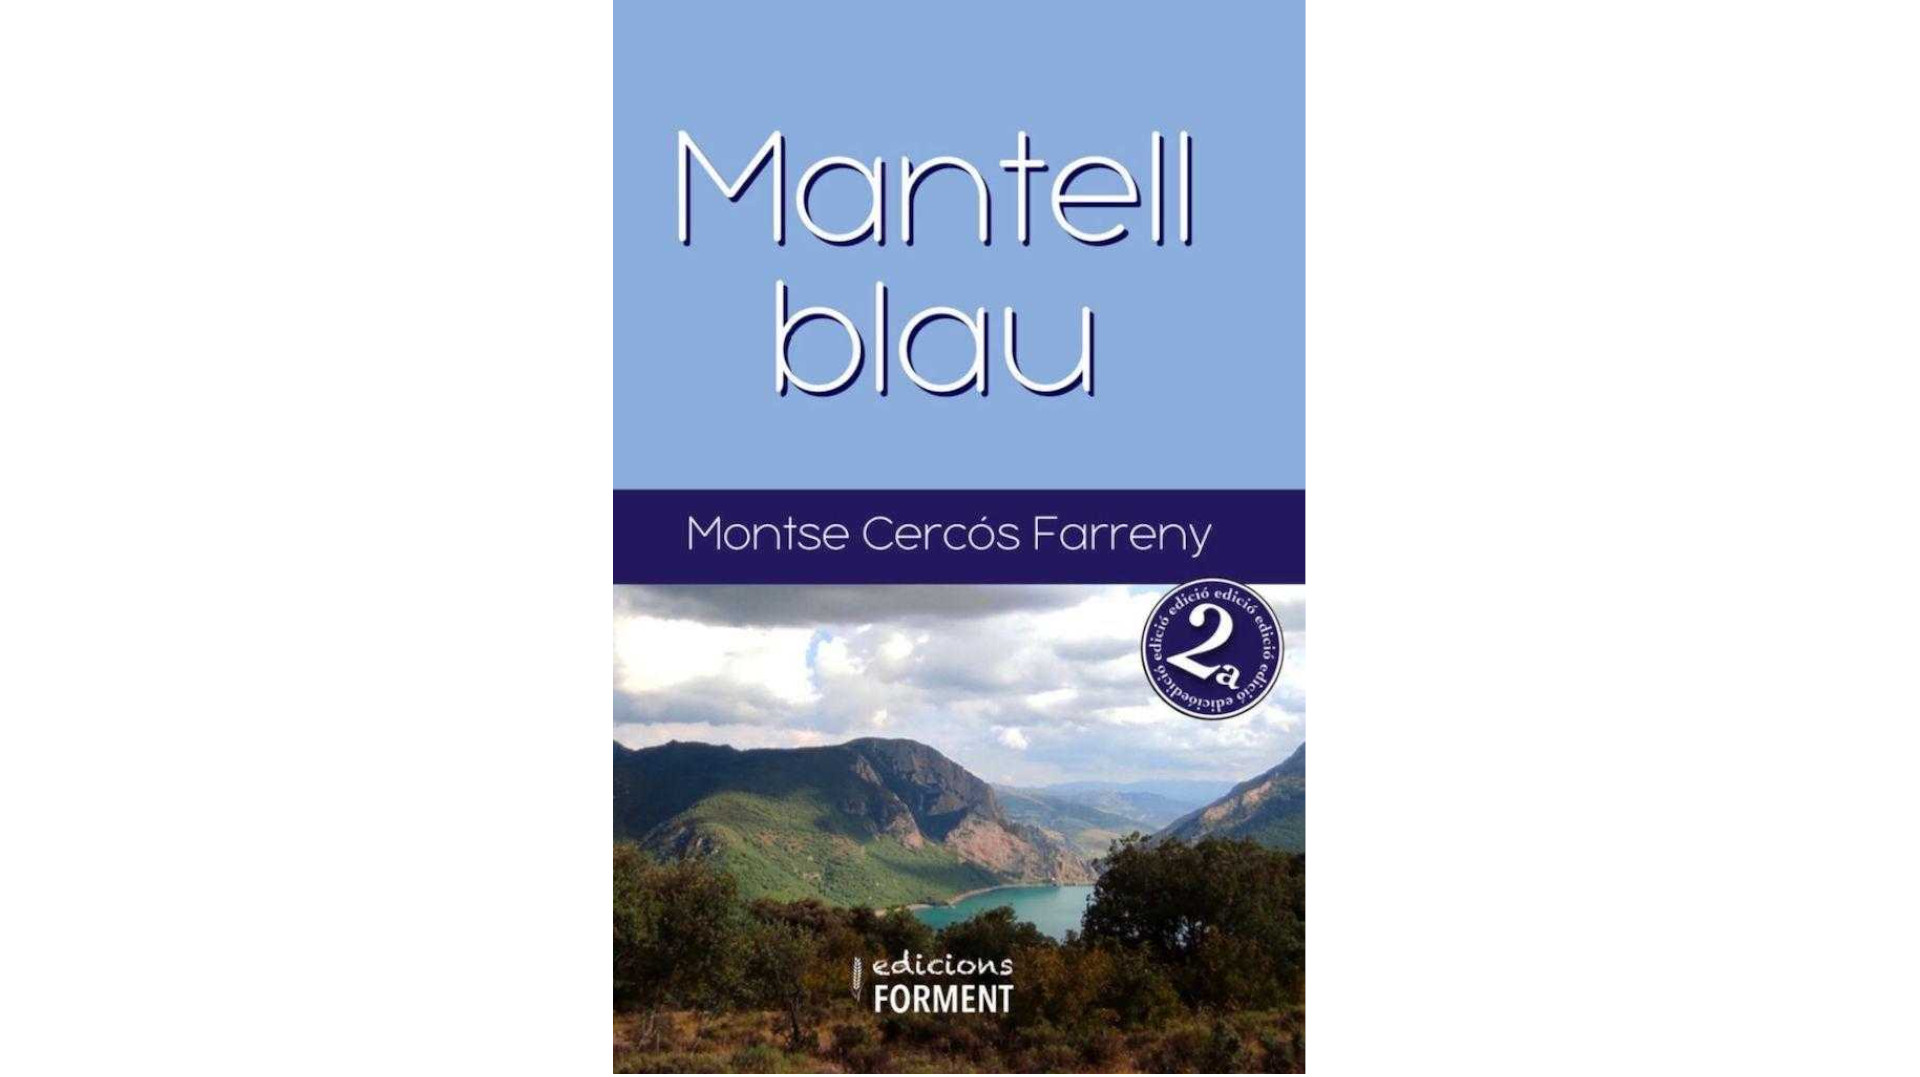 Presentació del poemari “Mantell Blau” de Montse Cercós Farreny